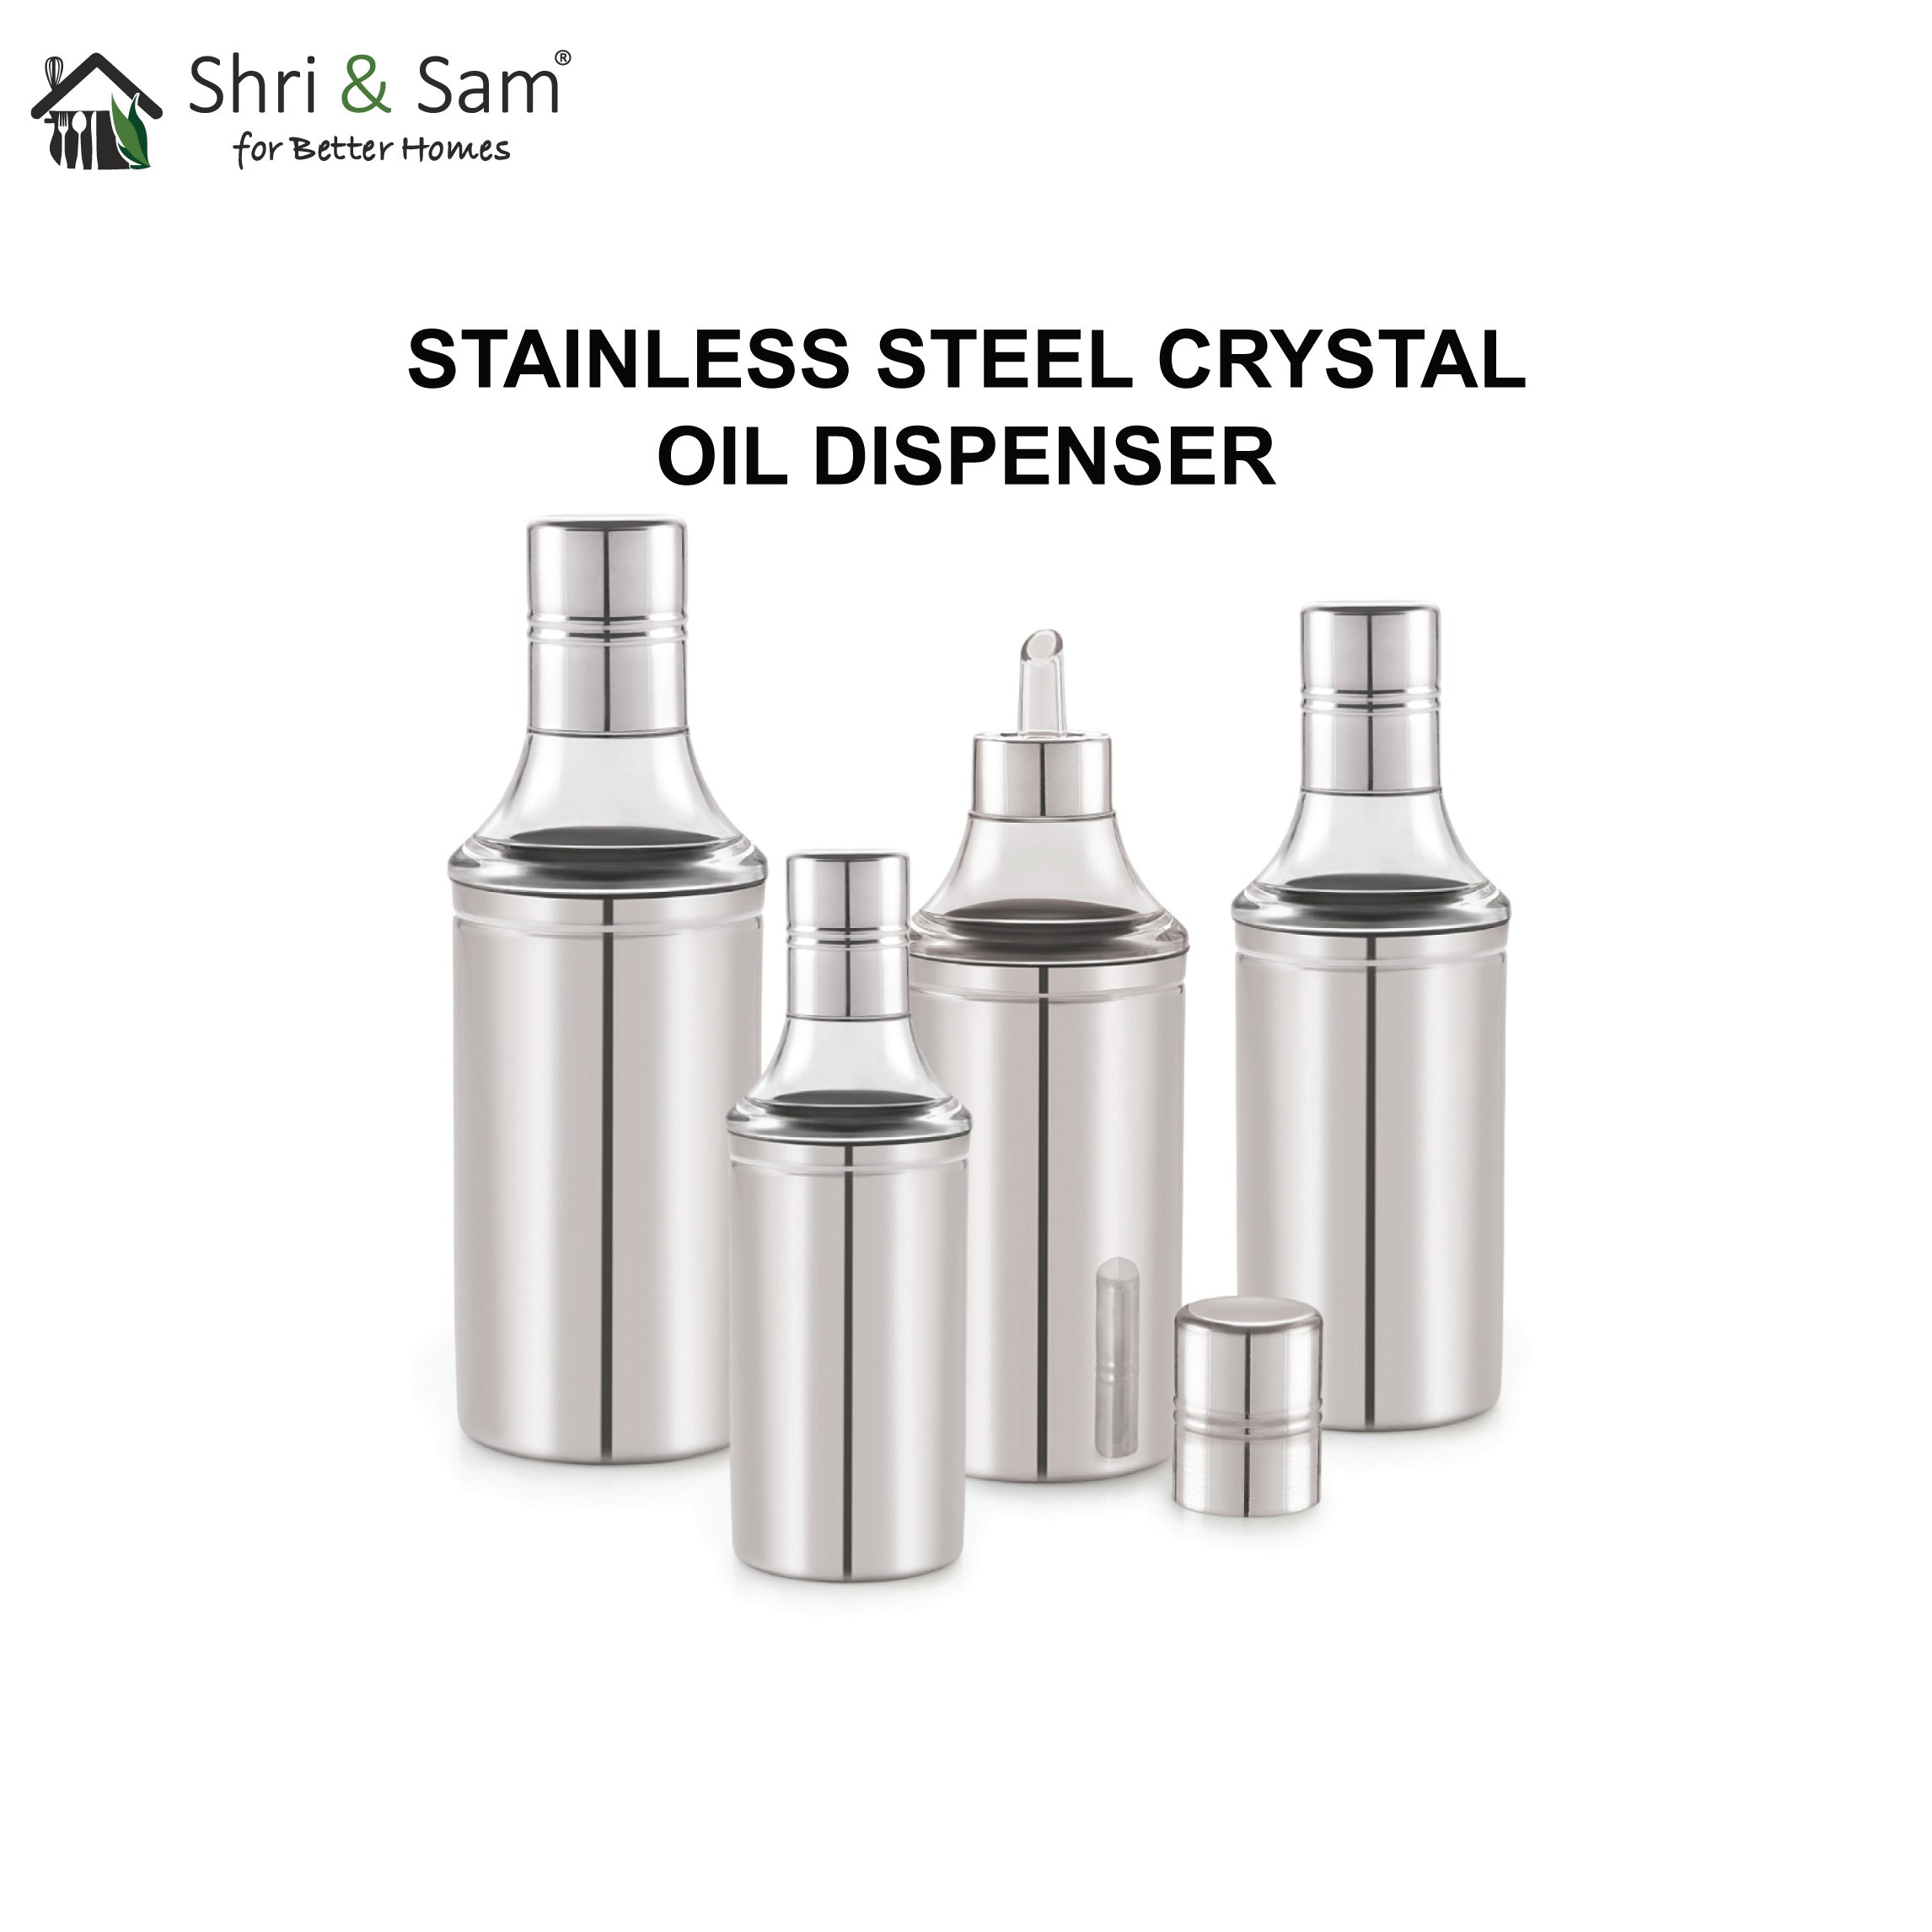 Stainless Steel Crystal Oil Dispenser